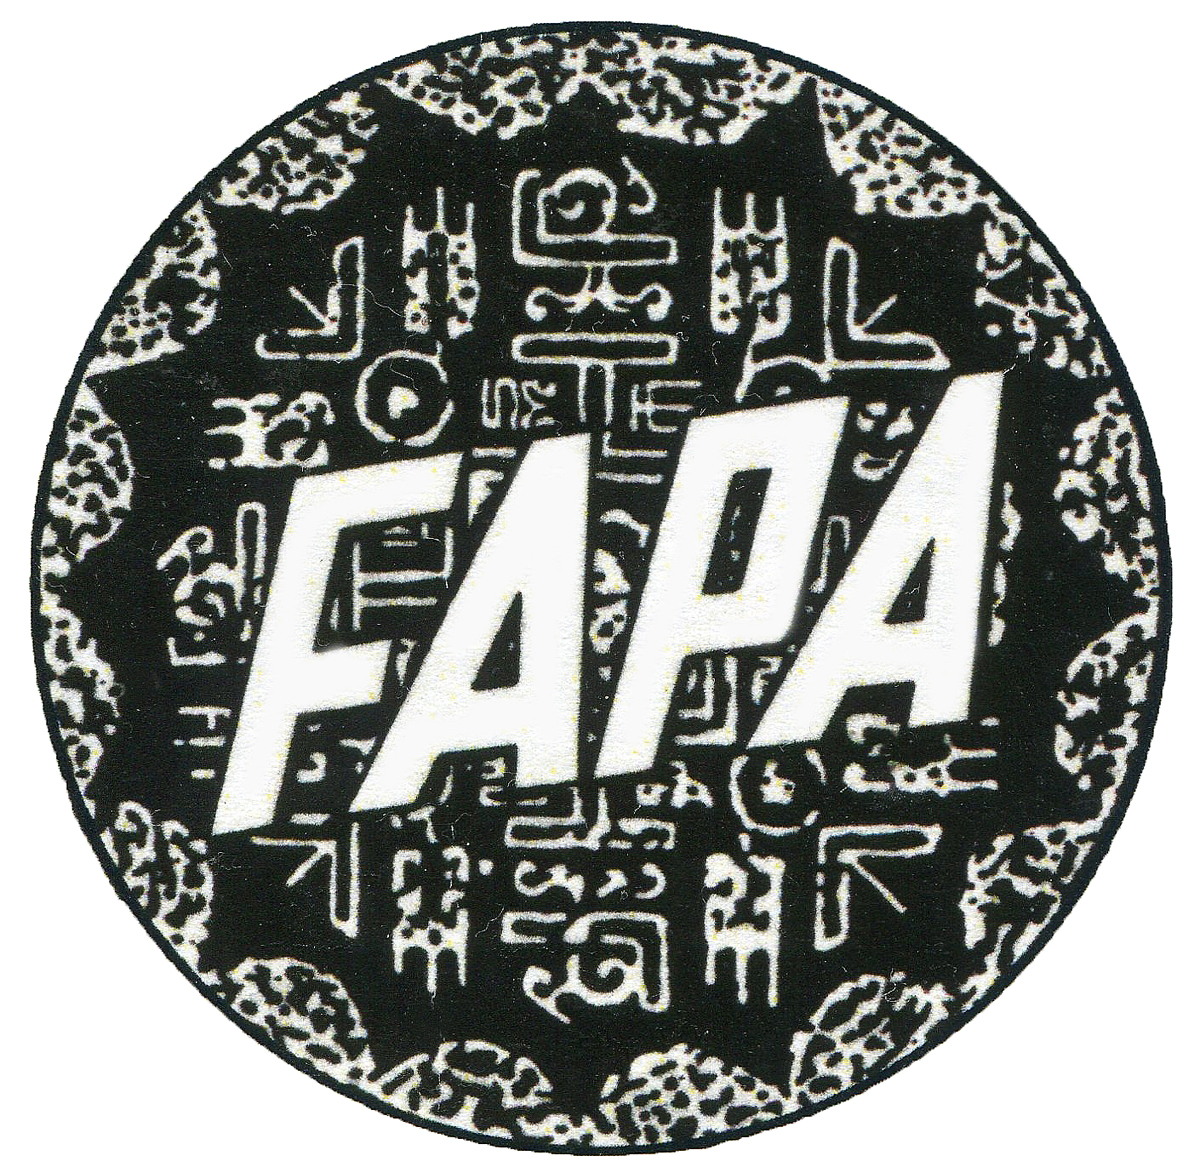 FAPA Member